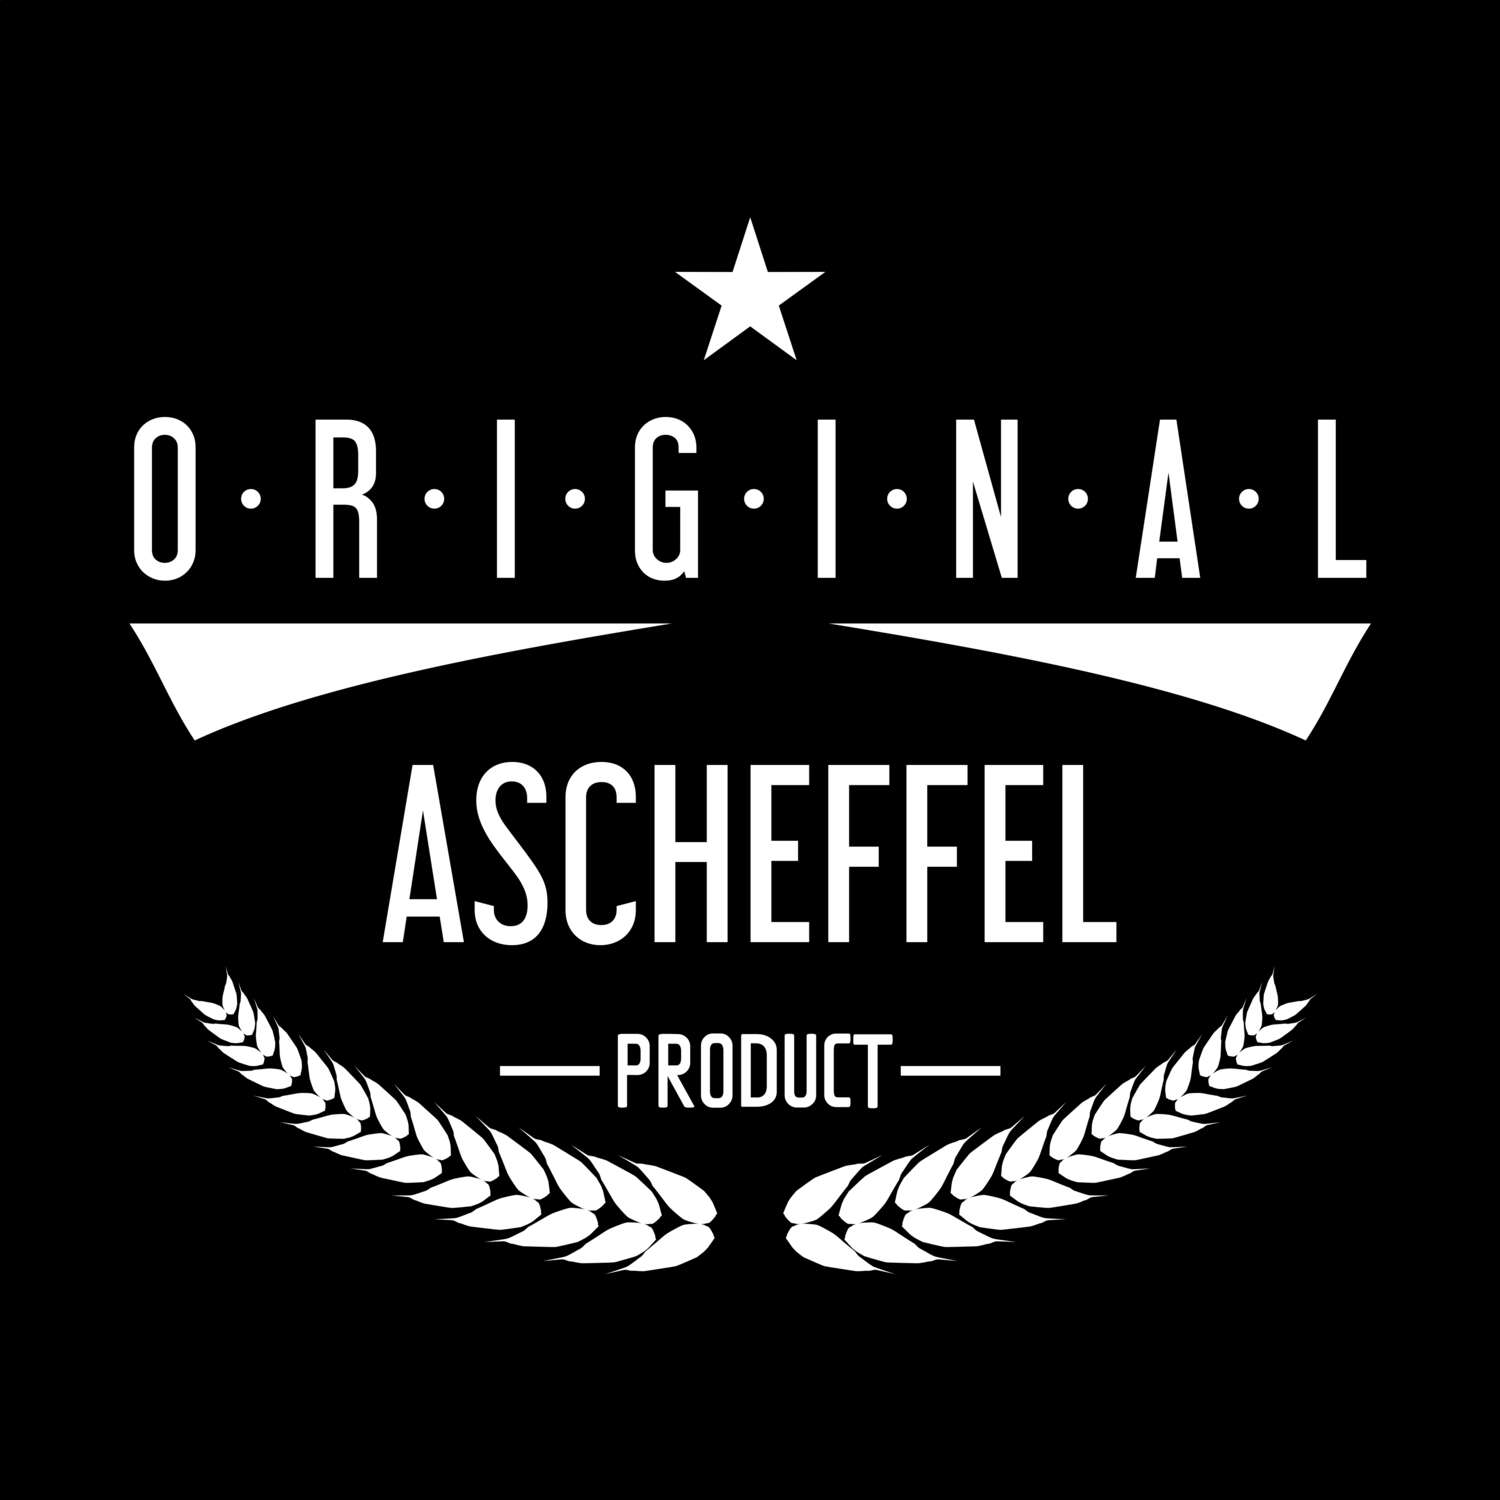 Ascheffel T-Shirt »Original Product«